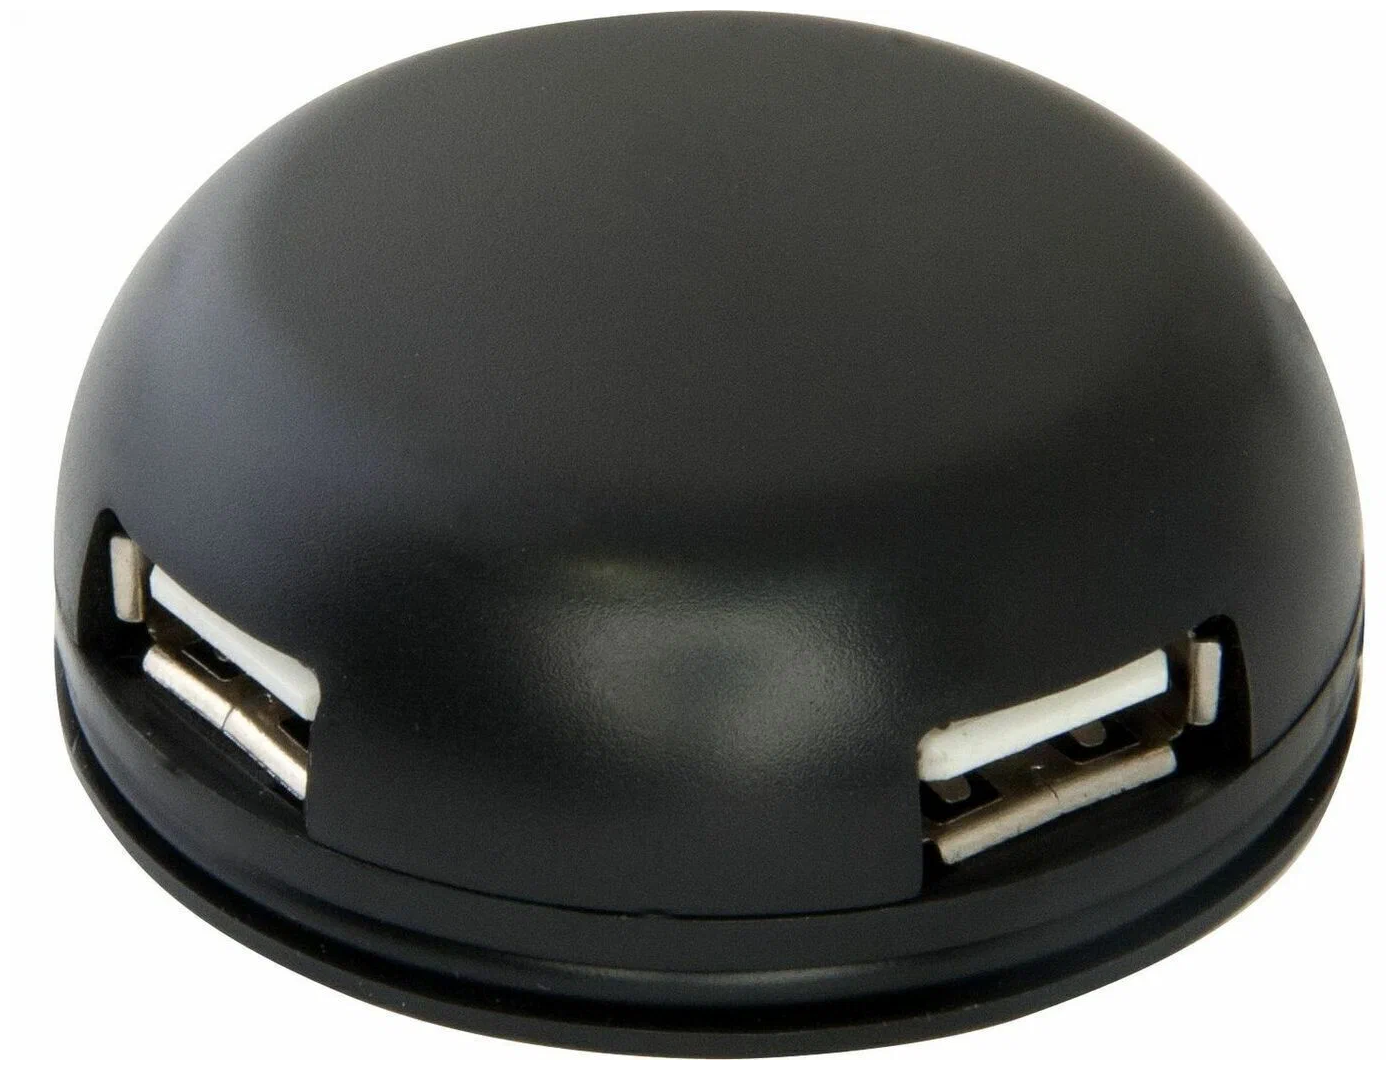 USB-концентратор Defender Quadro Light (83201) разъемов: 4